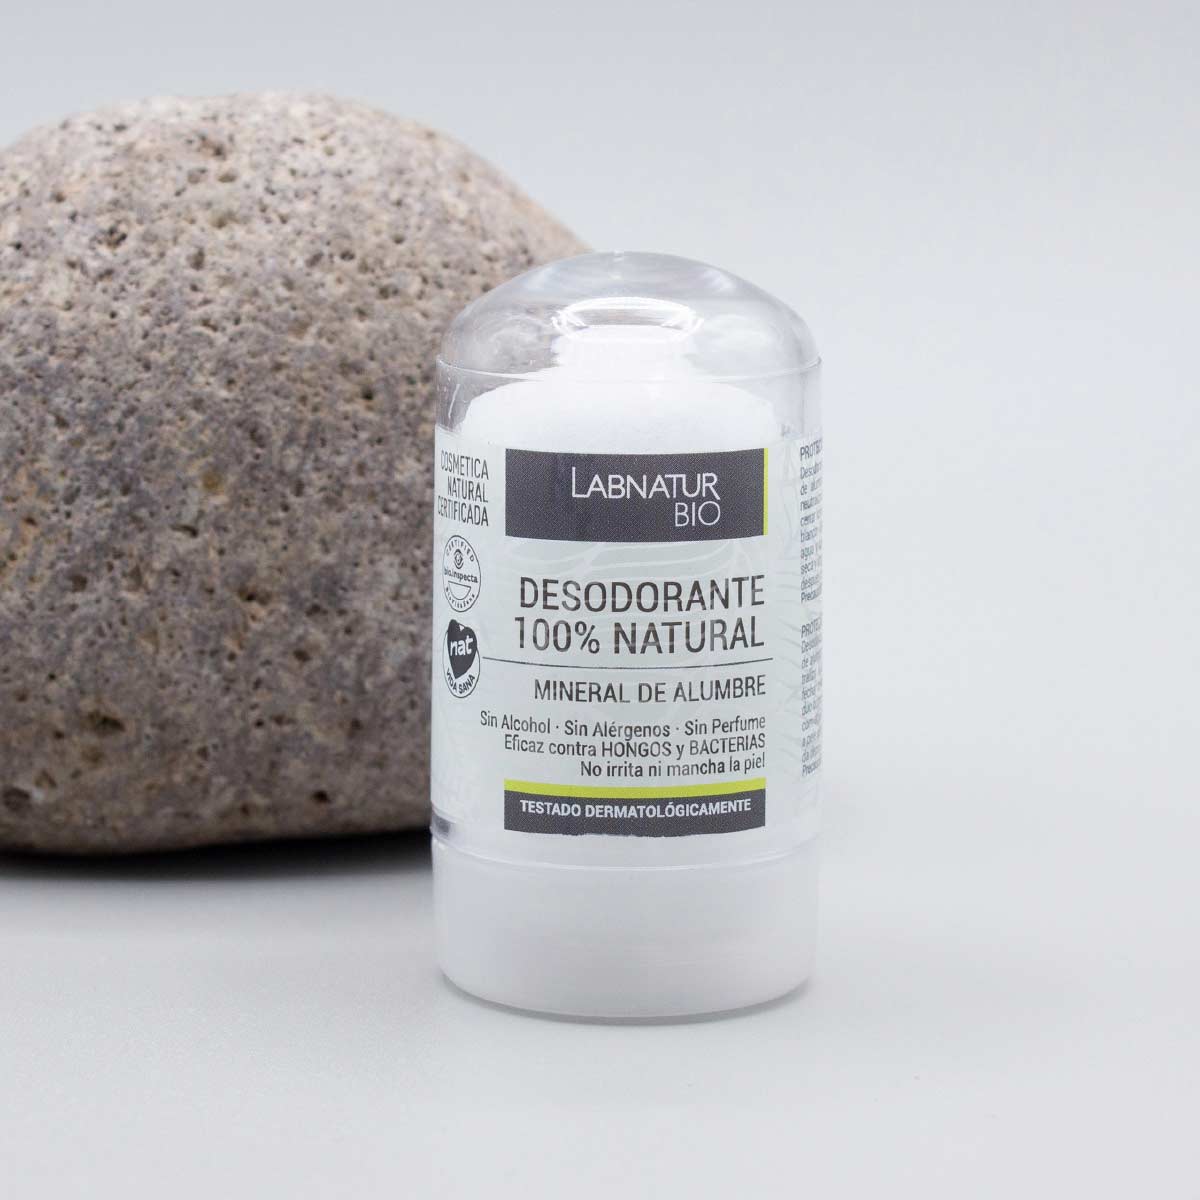 Comprar Desodorante 100% Piedra de Alumbre Labnatur Bio